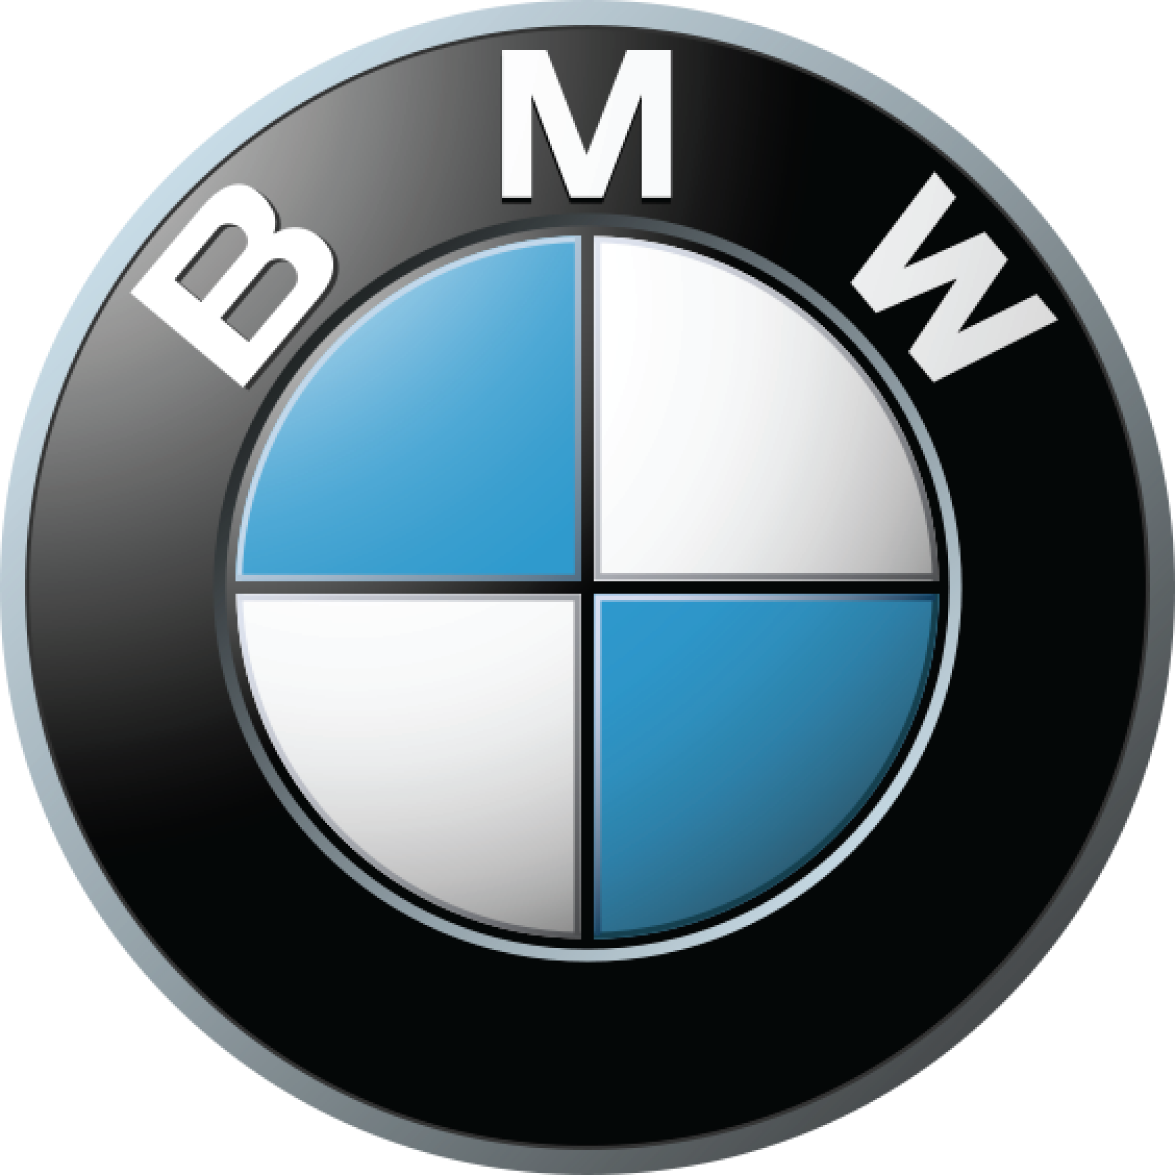 bmw car logo png brand image #2297